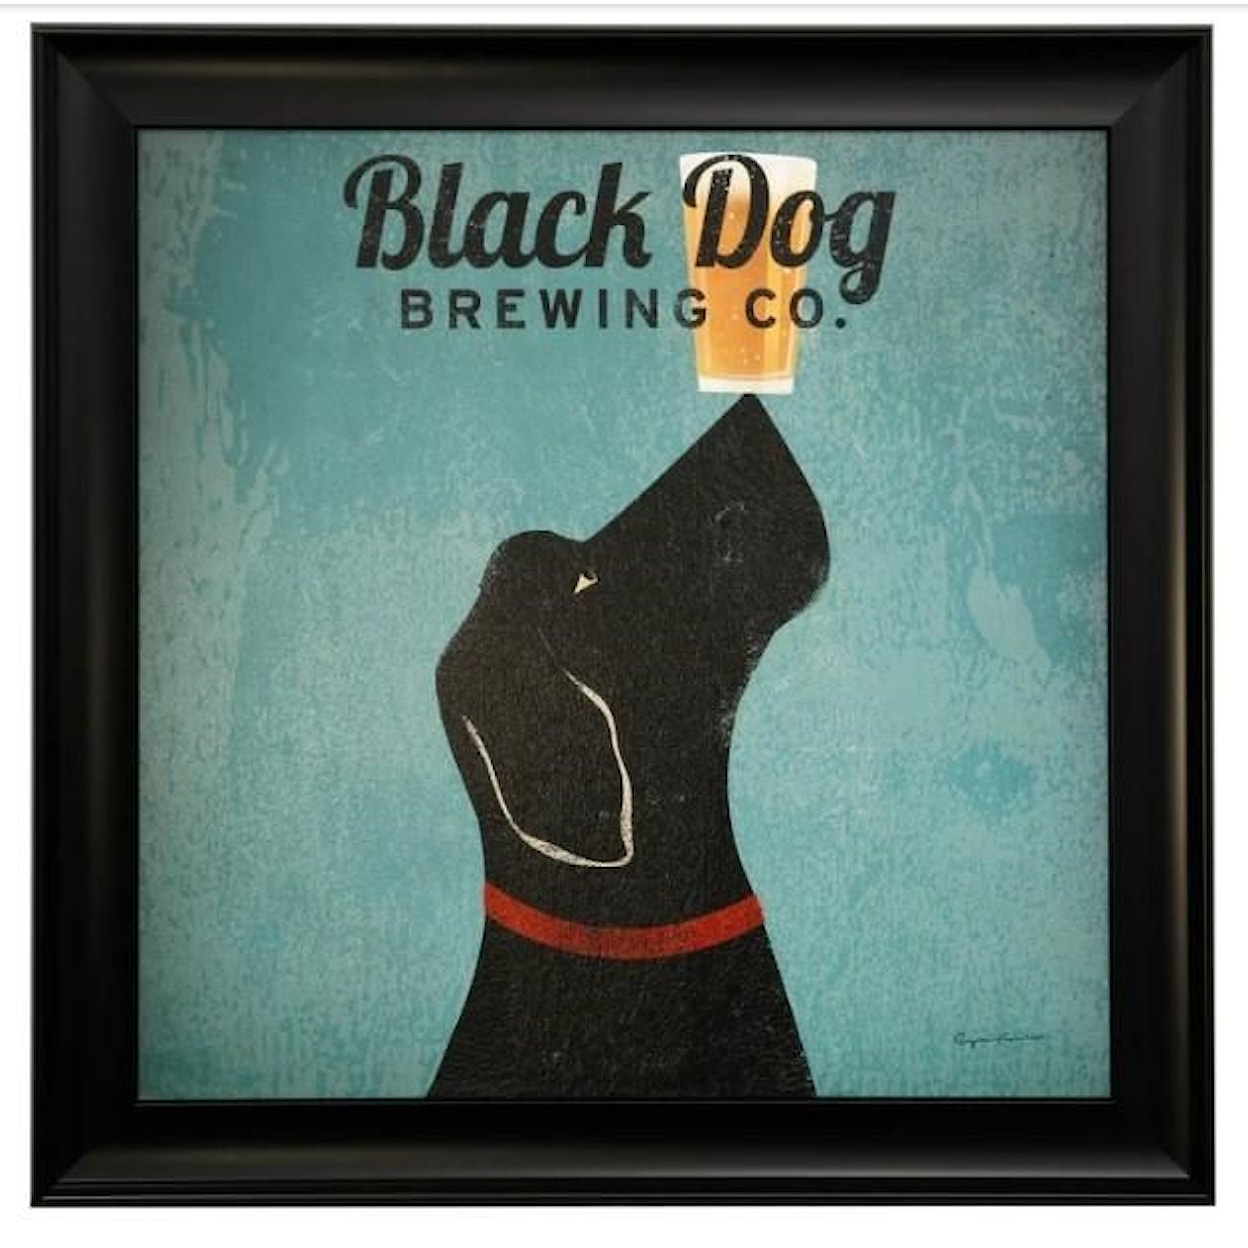 StyleCraft Wall Décor Black Dog Brewing Co. Framed Dog Print